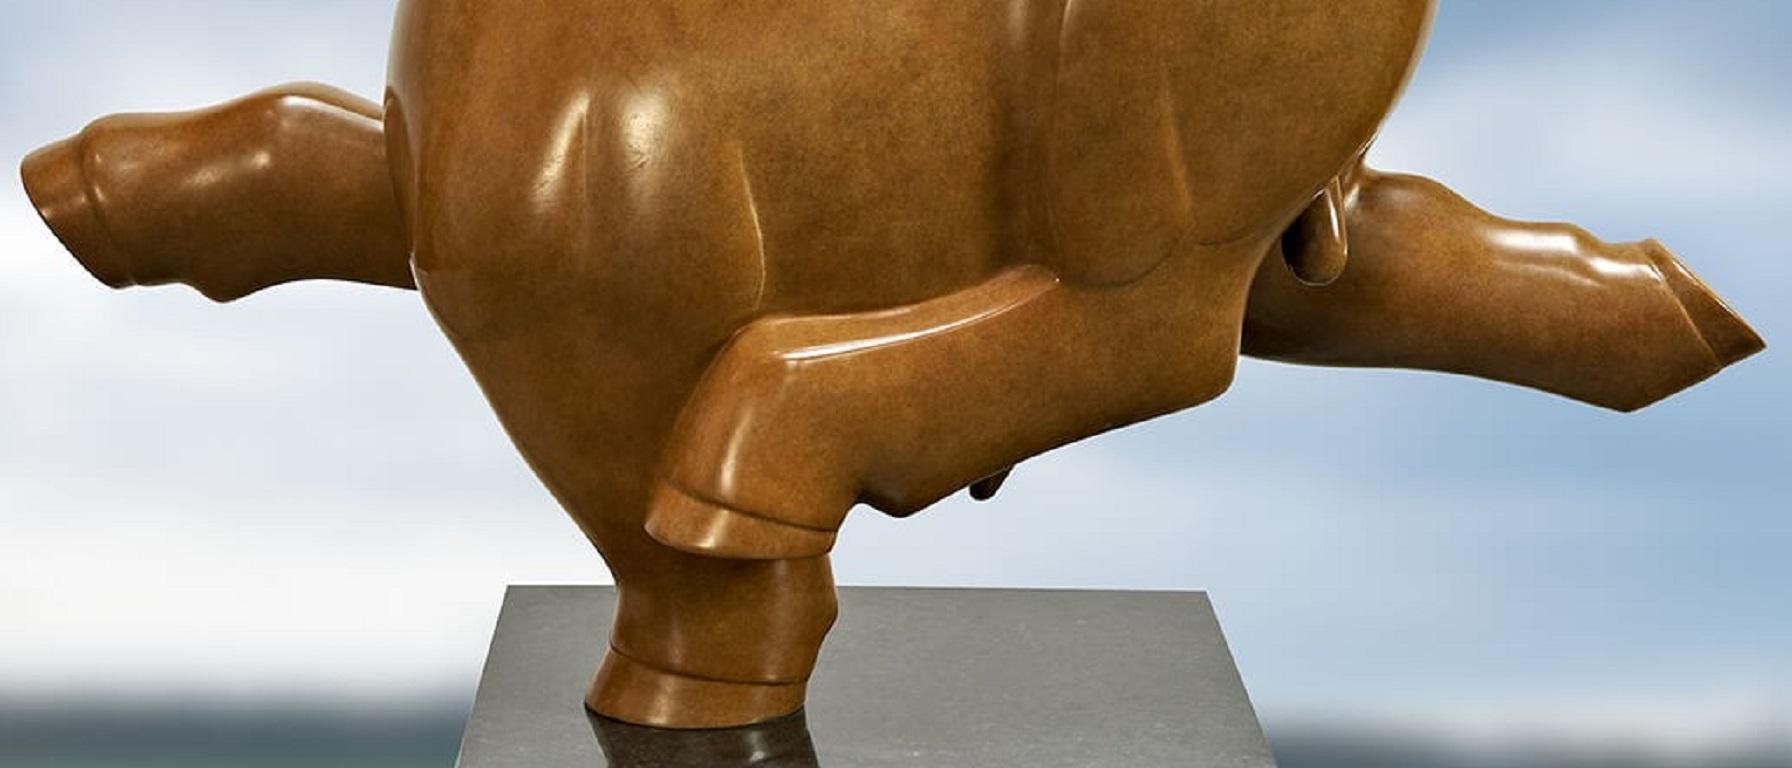 Wandelende Stier no. 3 Groot - Grand Taureau Marchant Sculpture en Bronze Animal En Stock . Le dernier dans cette grande taille. EA IV / IV

Evert den Hartog (né à Groot-Ammers, aux Pays-Bas, en 1949) a suivi une formation de sculpteur à l'Académie